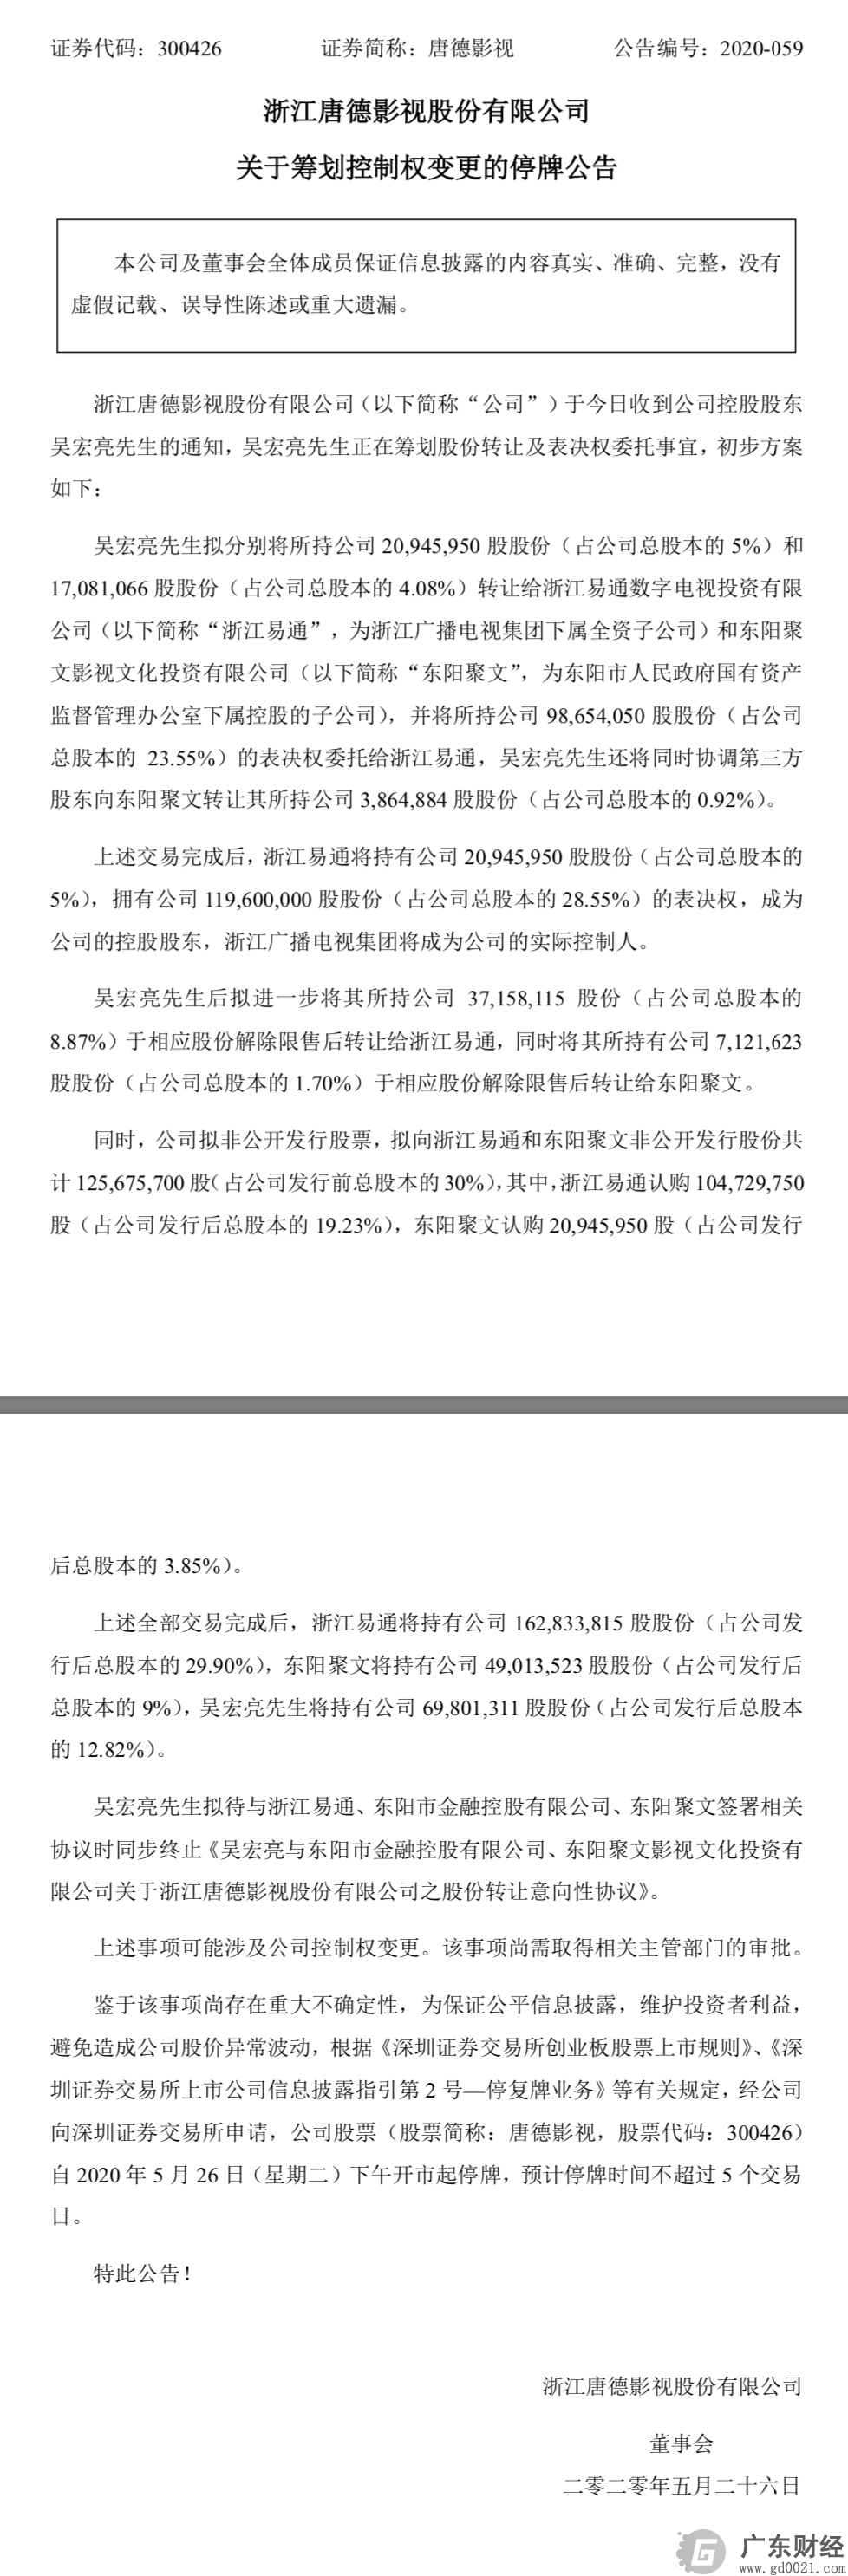 唐德影视易主，浙江广播电视集团以28.55%股份成为实控人